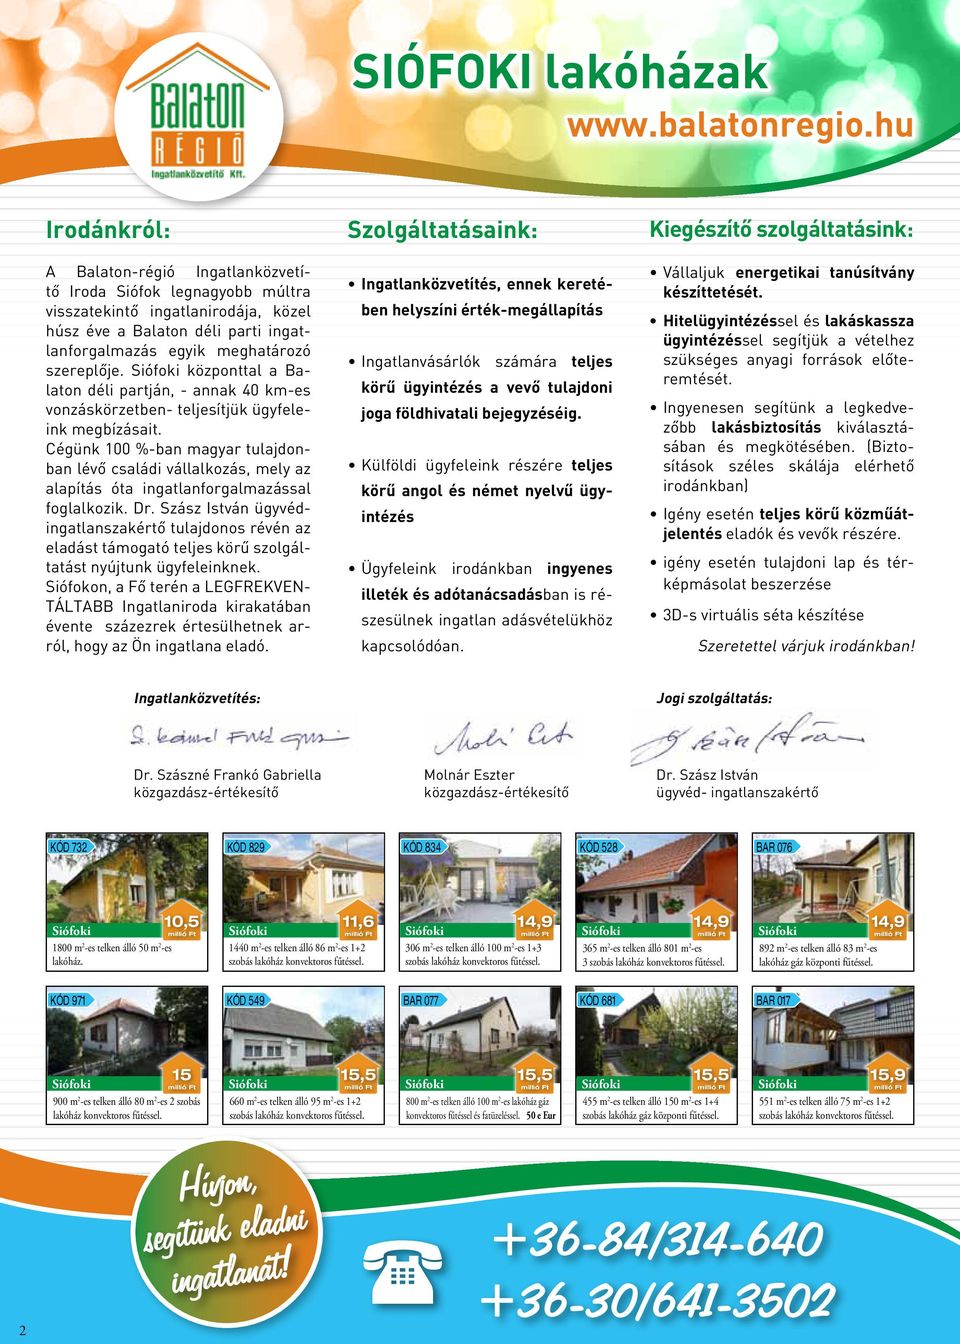 Cégünk 100 %-ban magyar tulajdonban lévő családi vállalkozás, mely az alapítás óta ingatlanforgalmazással foglalkozik. Dr.